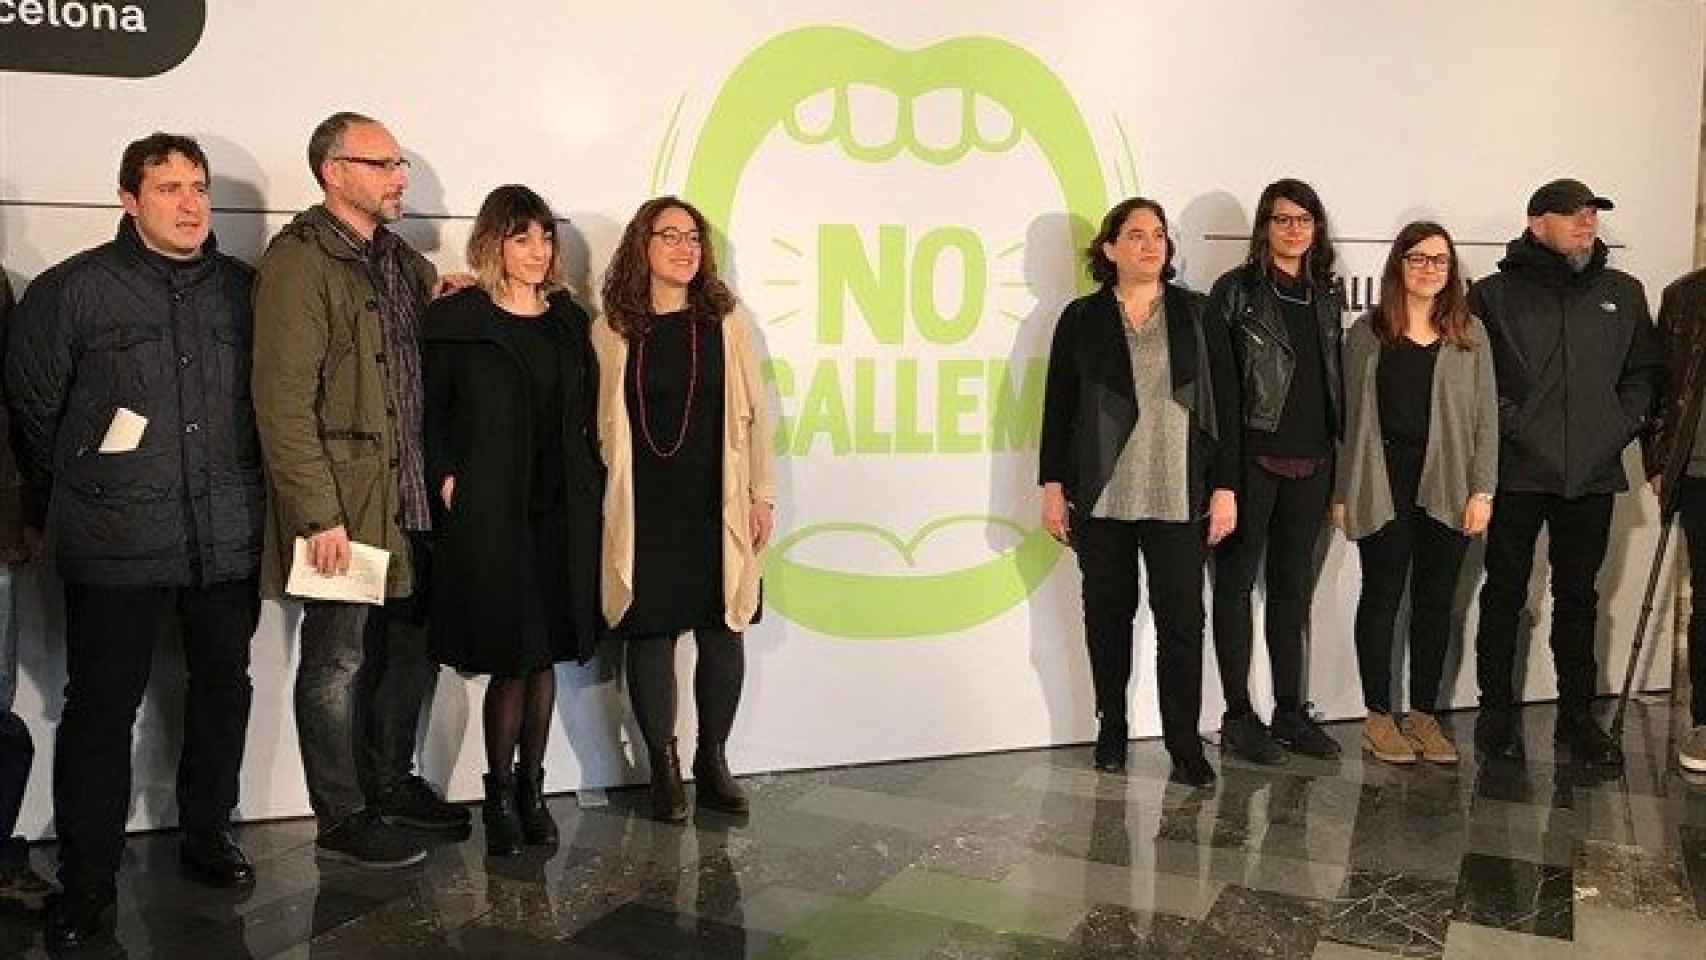 Lanzamiento de la campaña No Callemcontra el acoso sexual nocturno / EUROPA PRESS